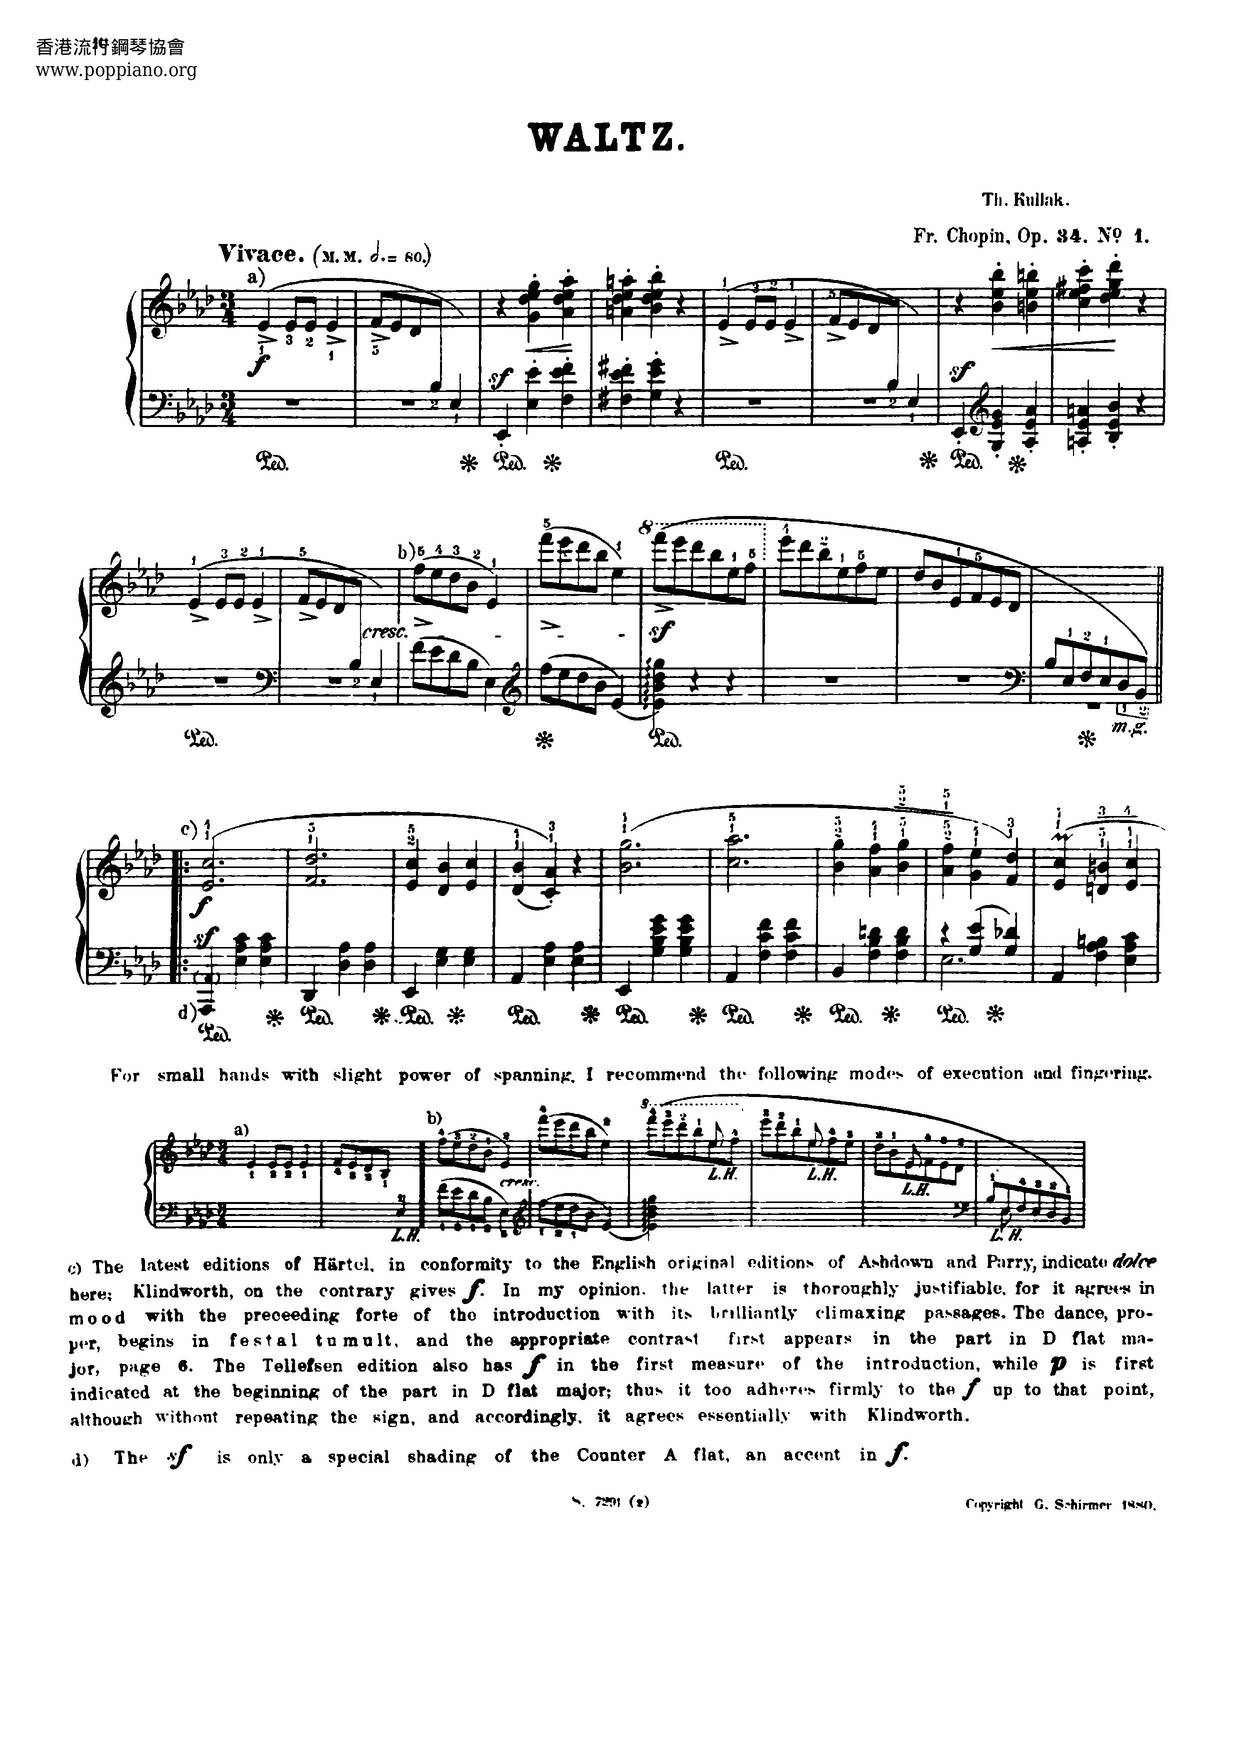 Waltzes, Op. 34 Score